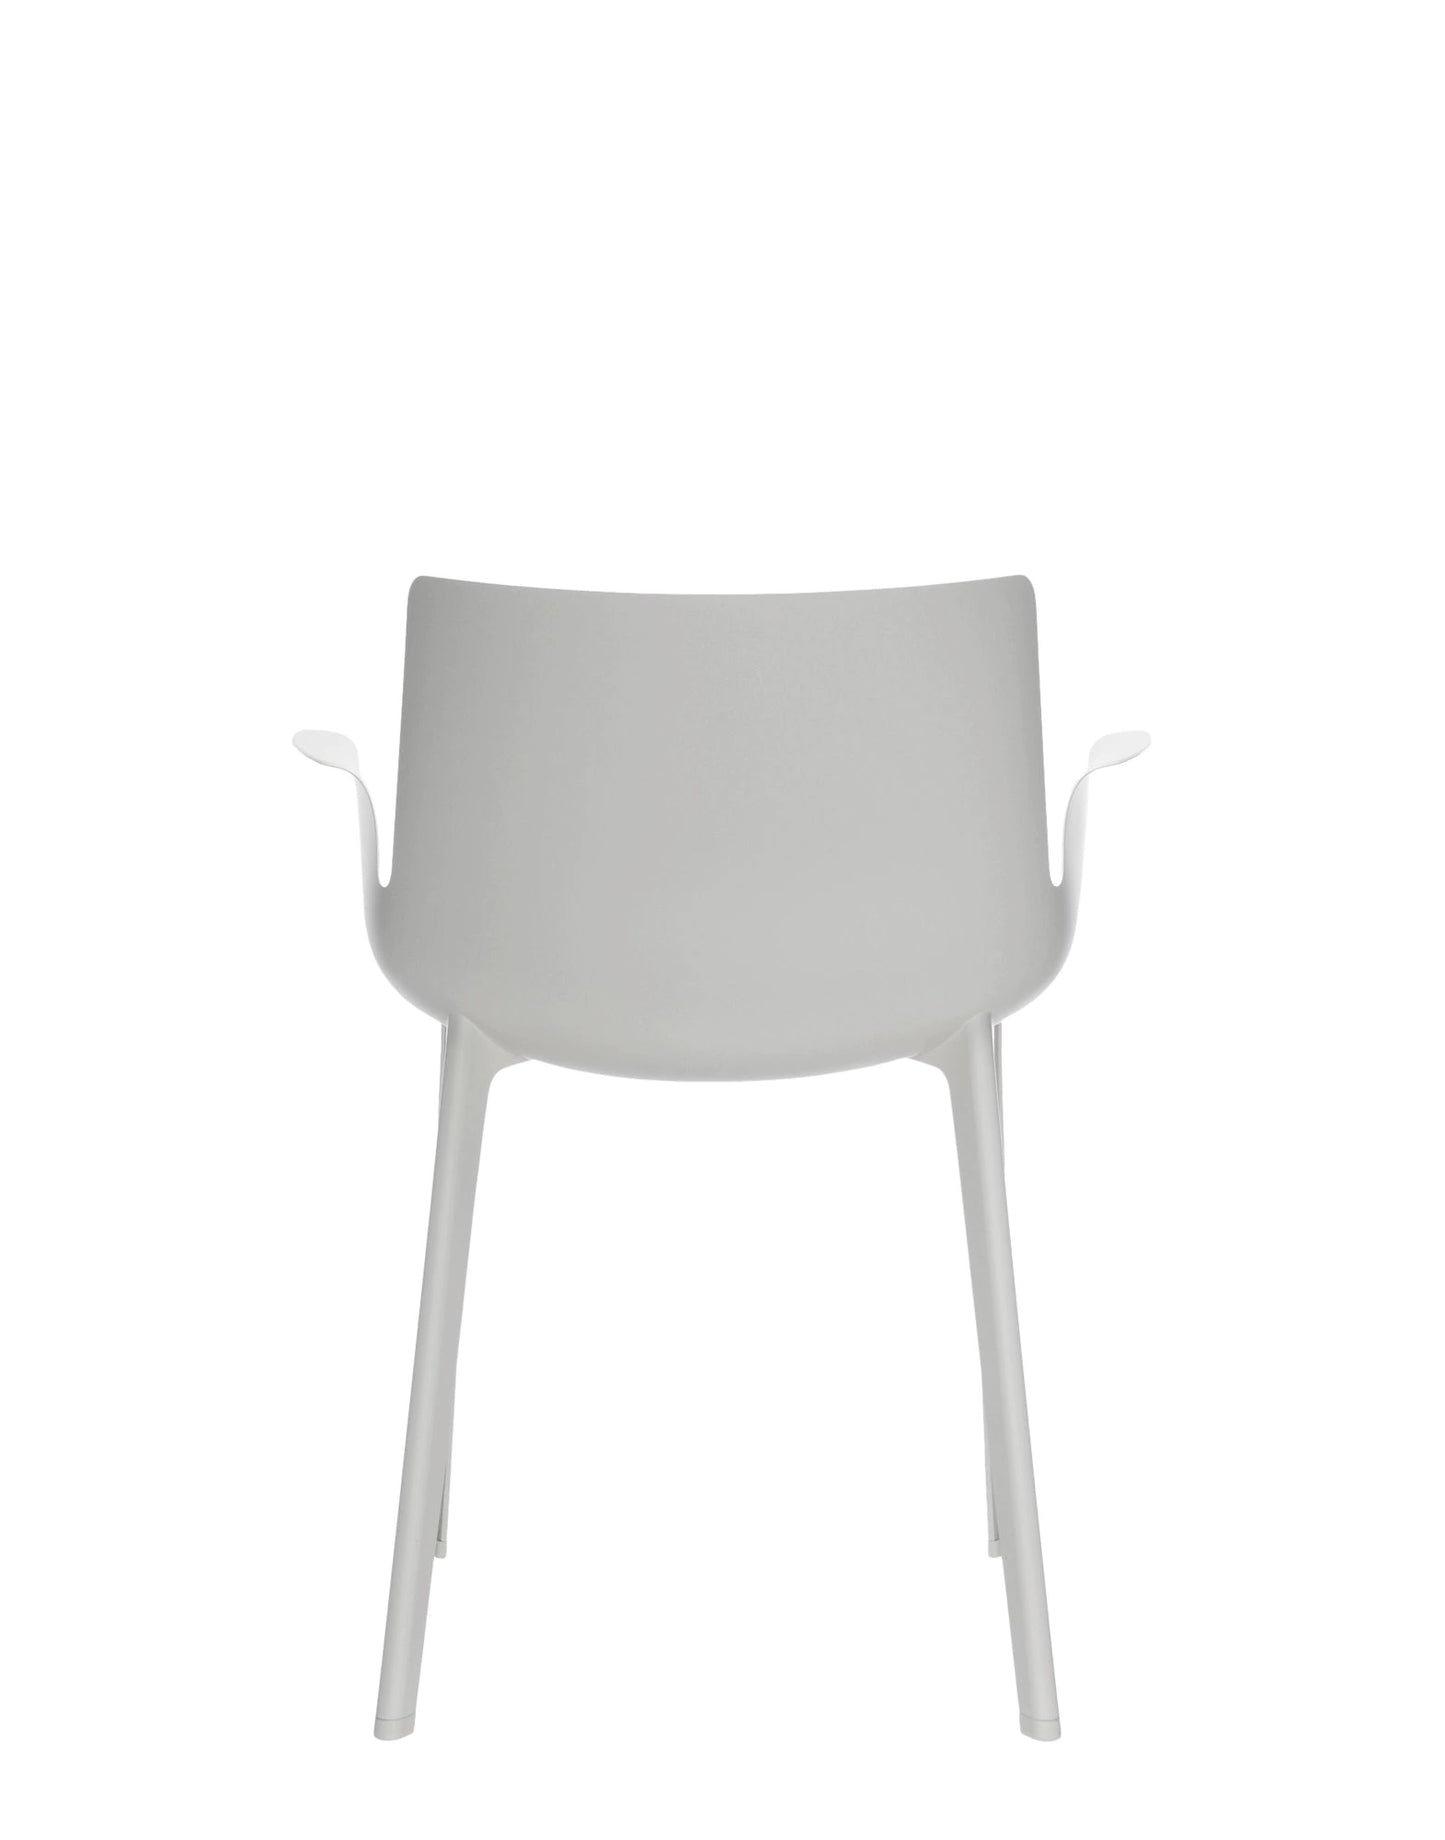 Kartell Piuma Chair in White